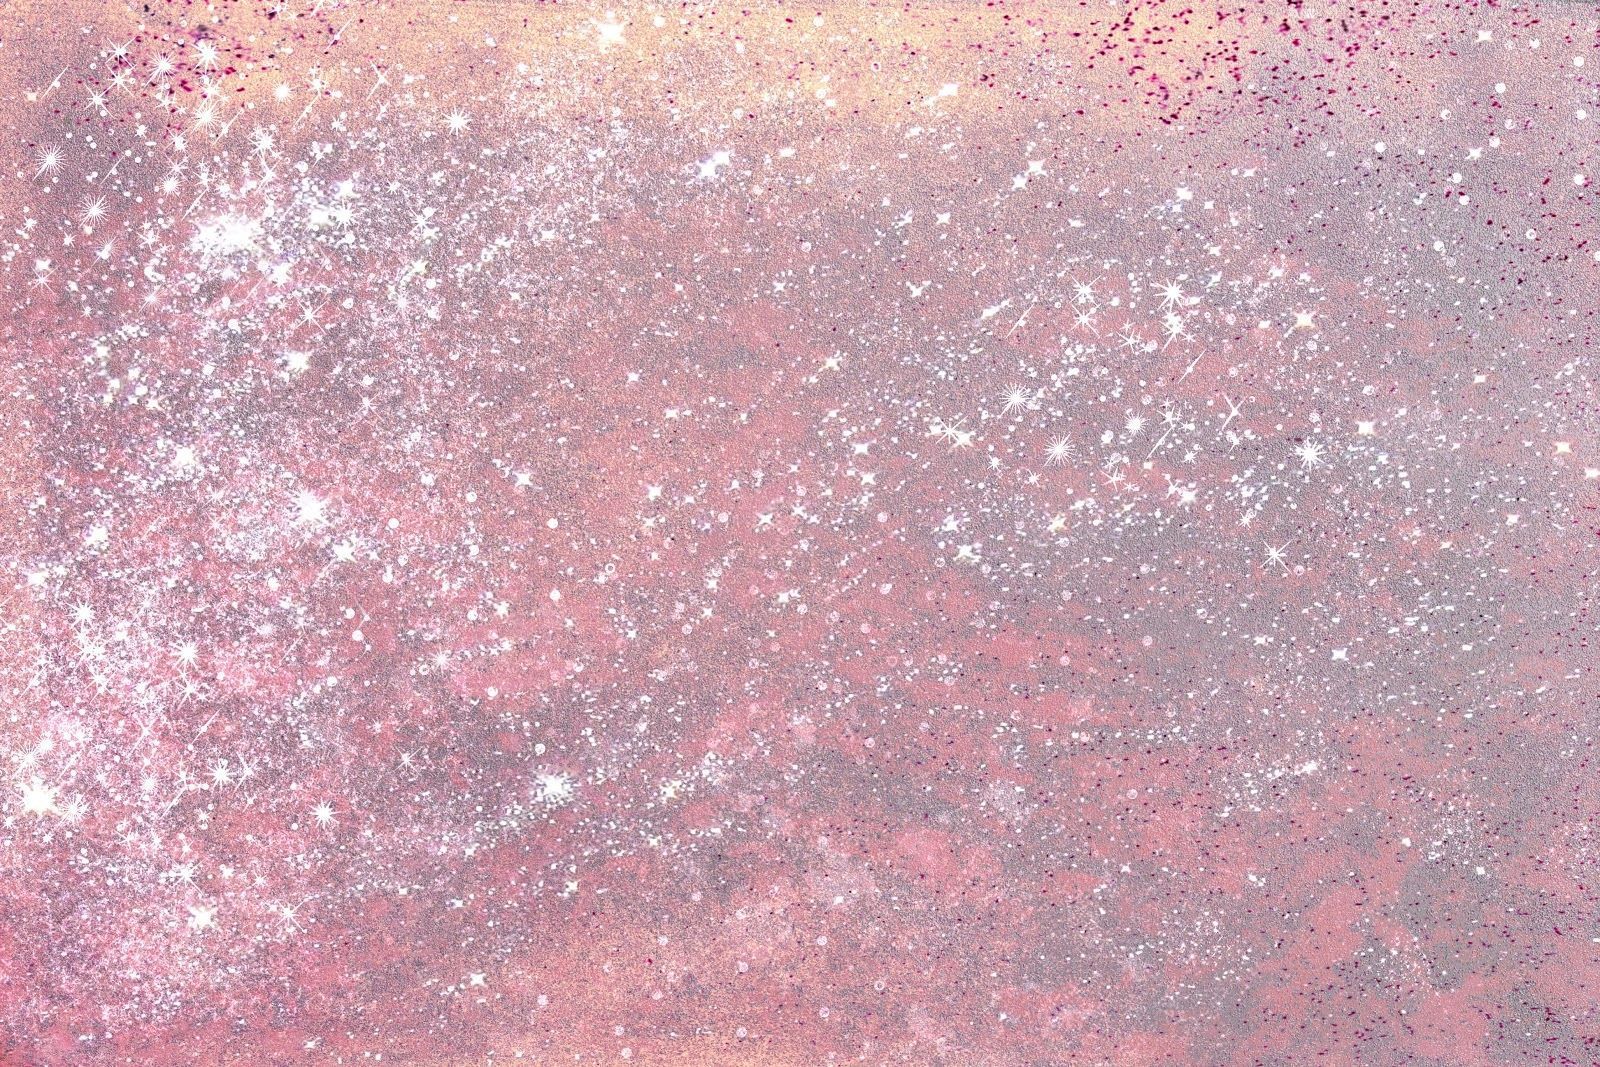 Glitter Aesthetic Tumblr Wallpapers.